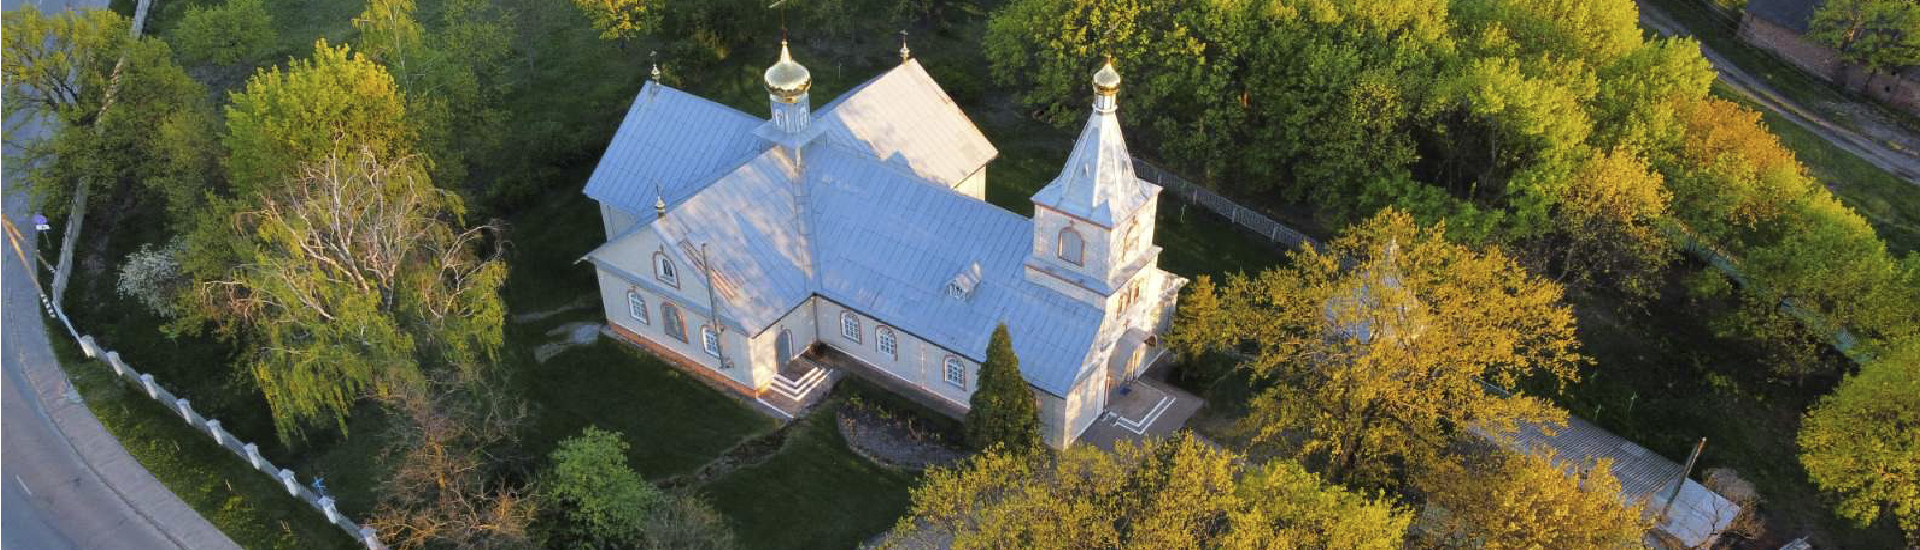 11 сентября по новому стилю и 29 августа по старому стилю Православная Церковь празднует память святого Пророка, Предтечи и Крестителя Господня Иоанна